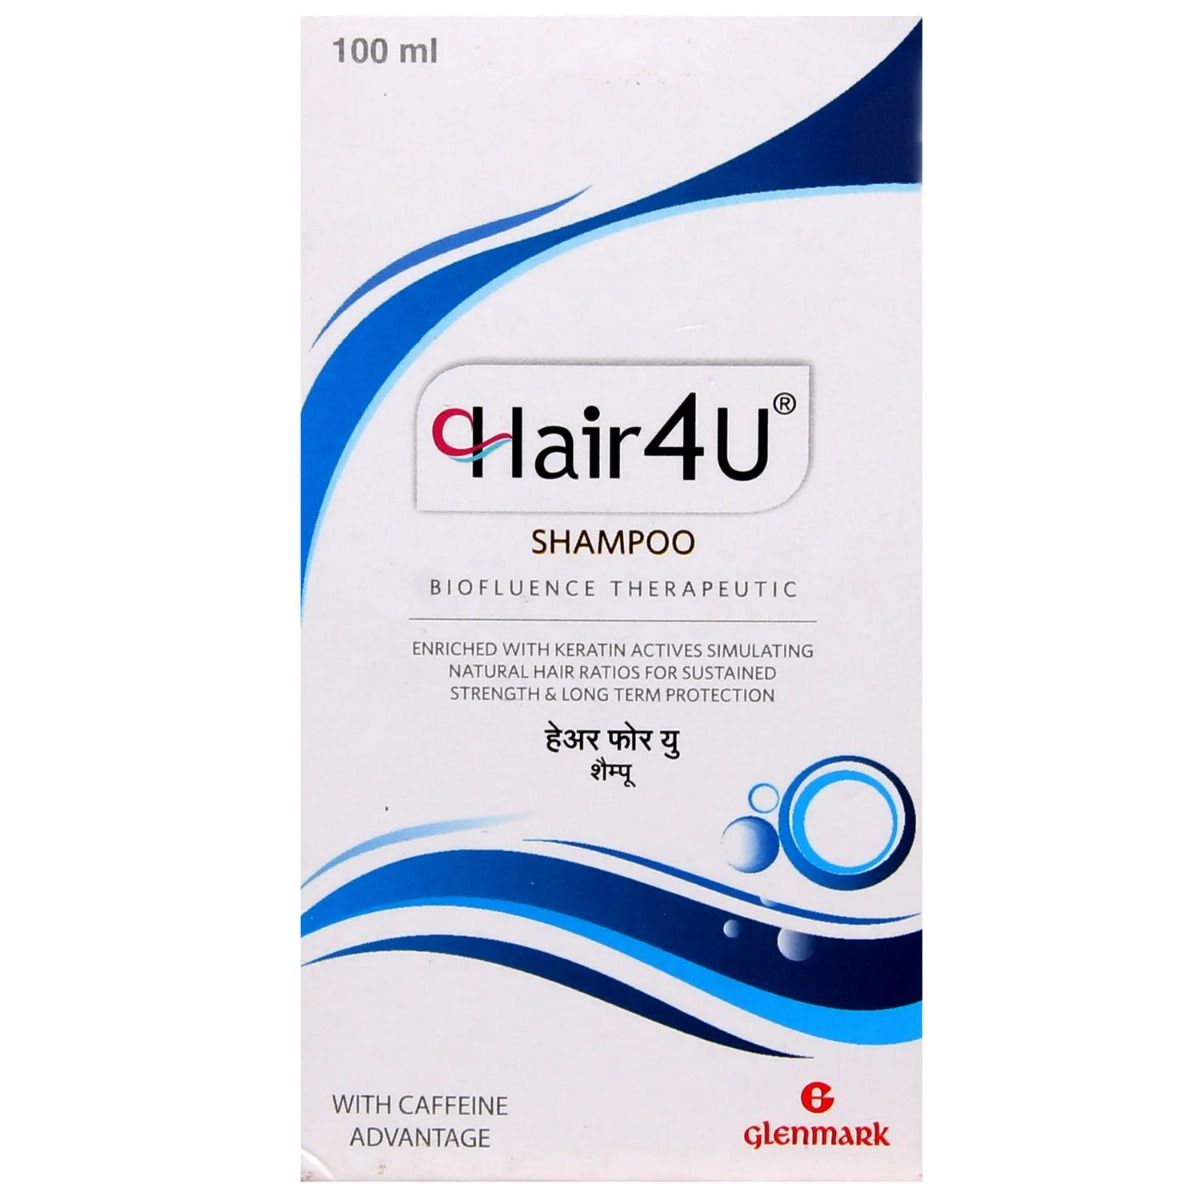 Hair 4U Shampoo, 100 ml, Pack of 1 